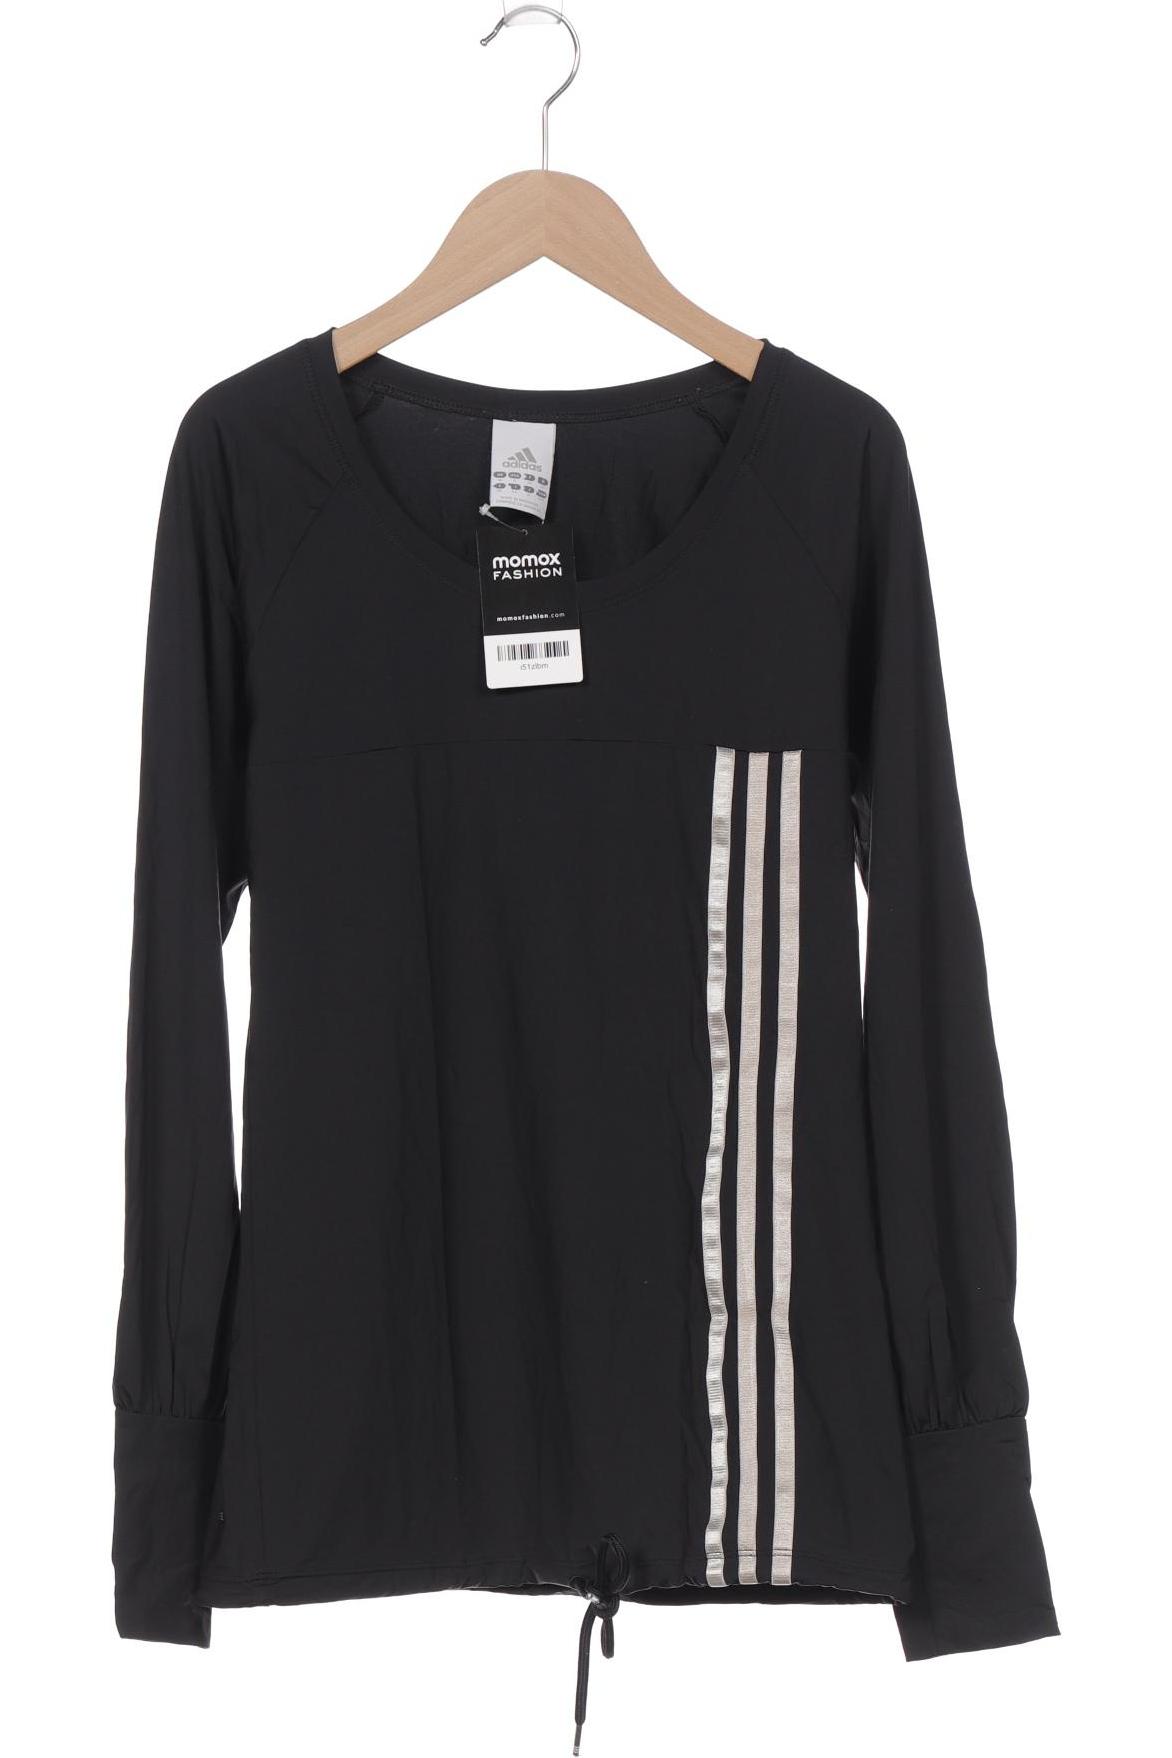 adidas Damen Langarmshirt, schwarz von Adidas